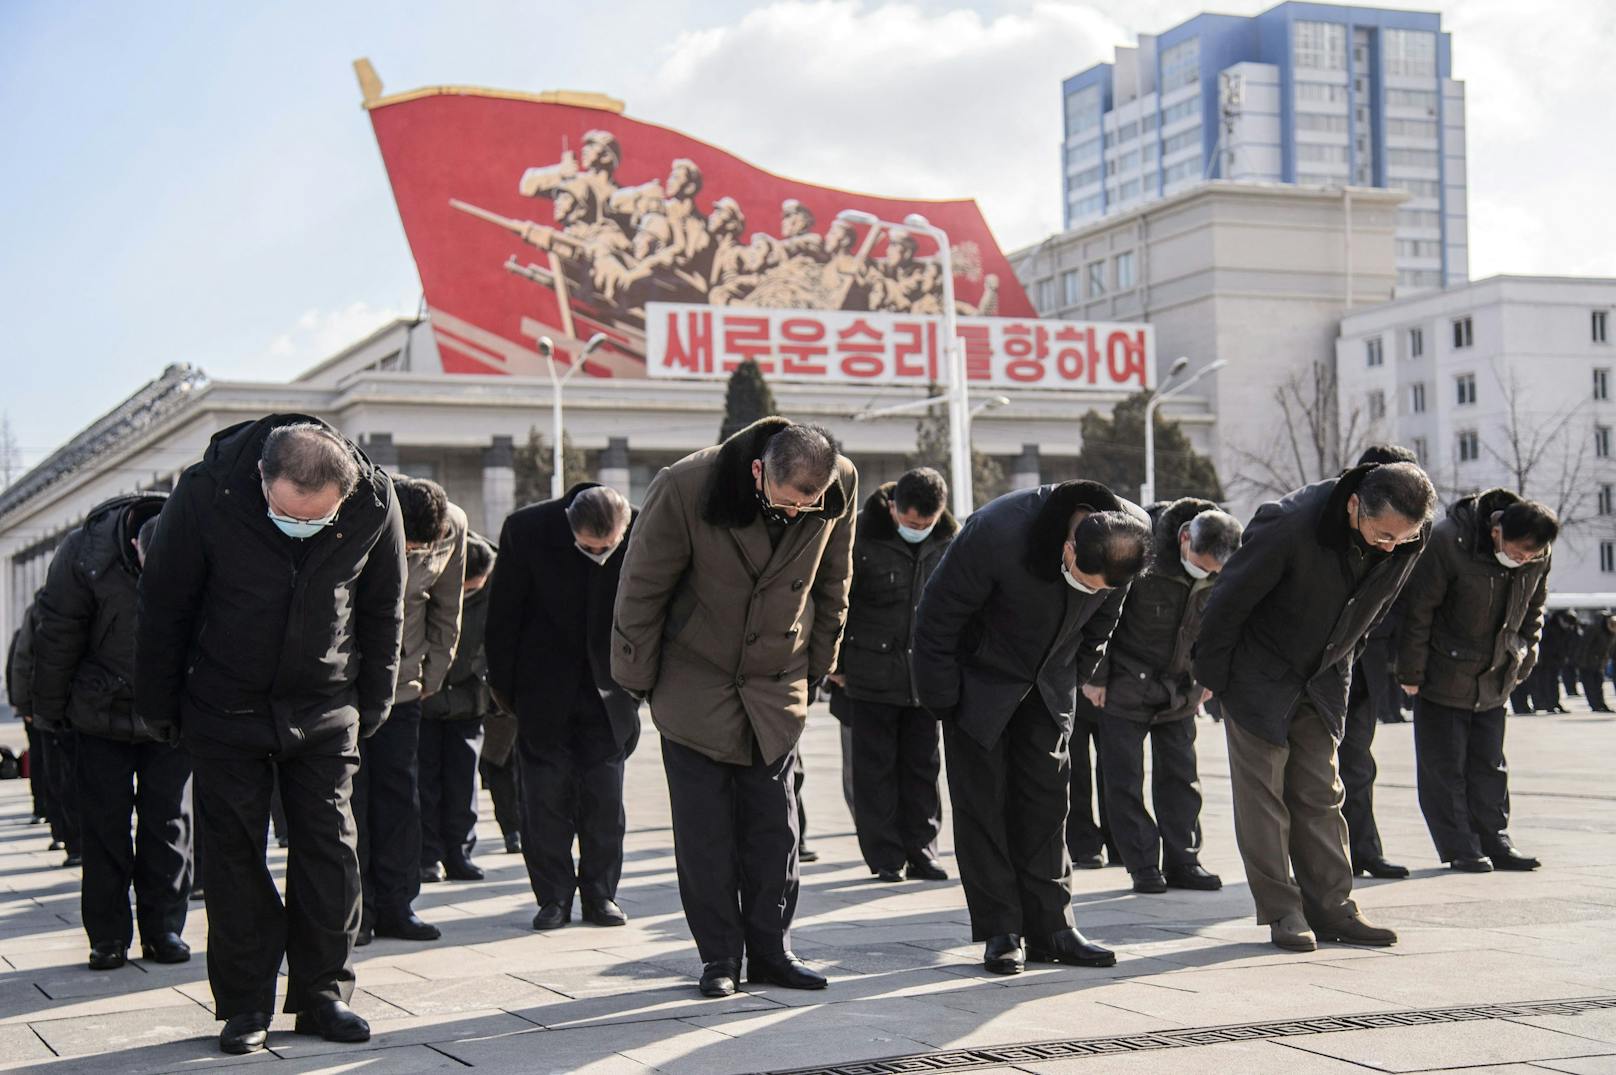 Nordkoreaner bei den Trauerfeierlichkeiten zum Todestag von Kim Jong Il.